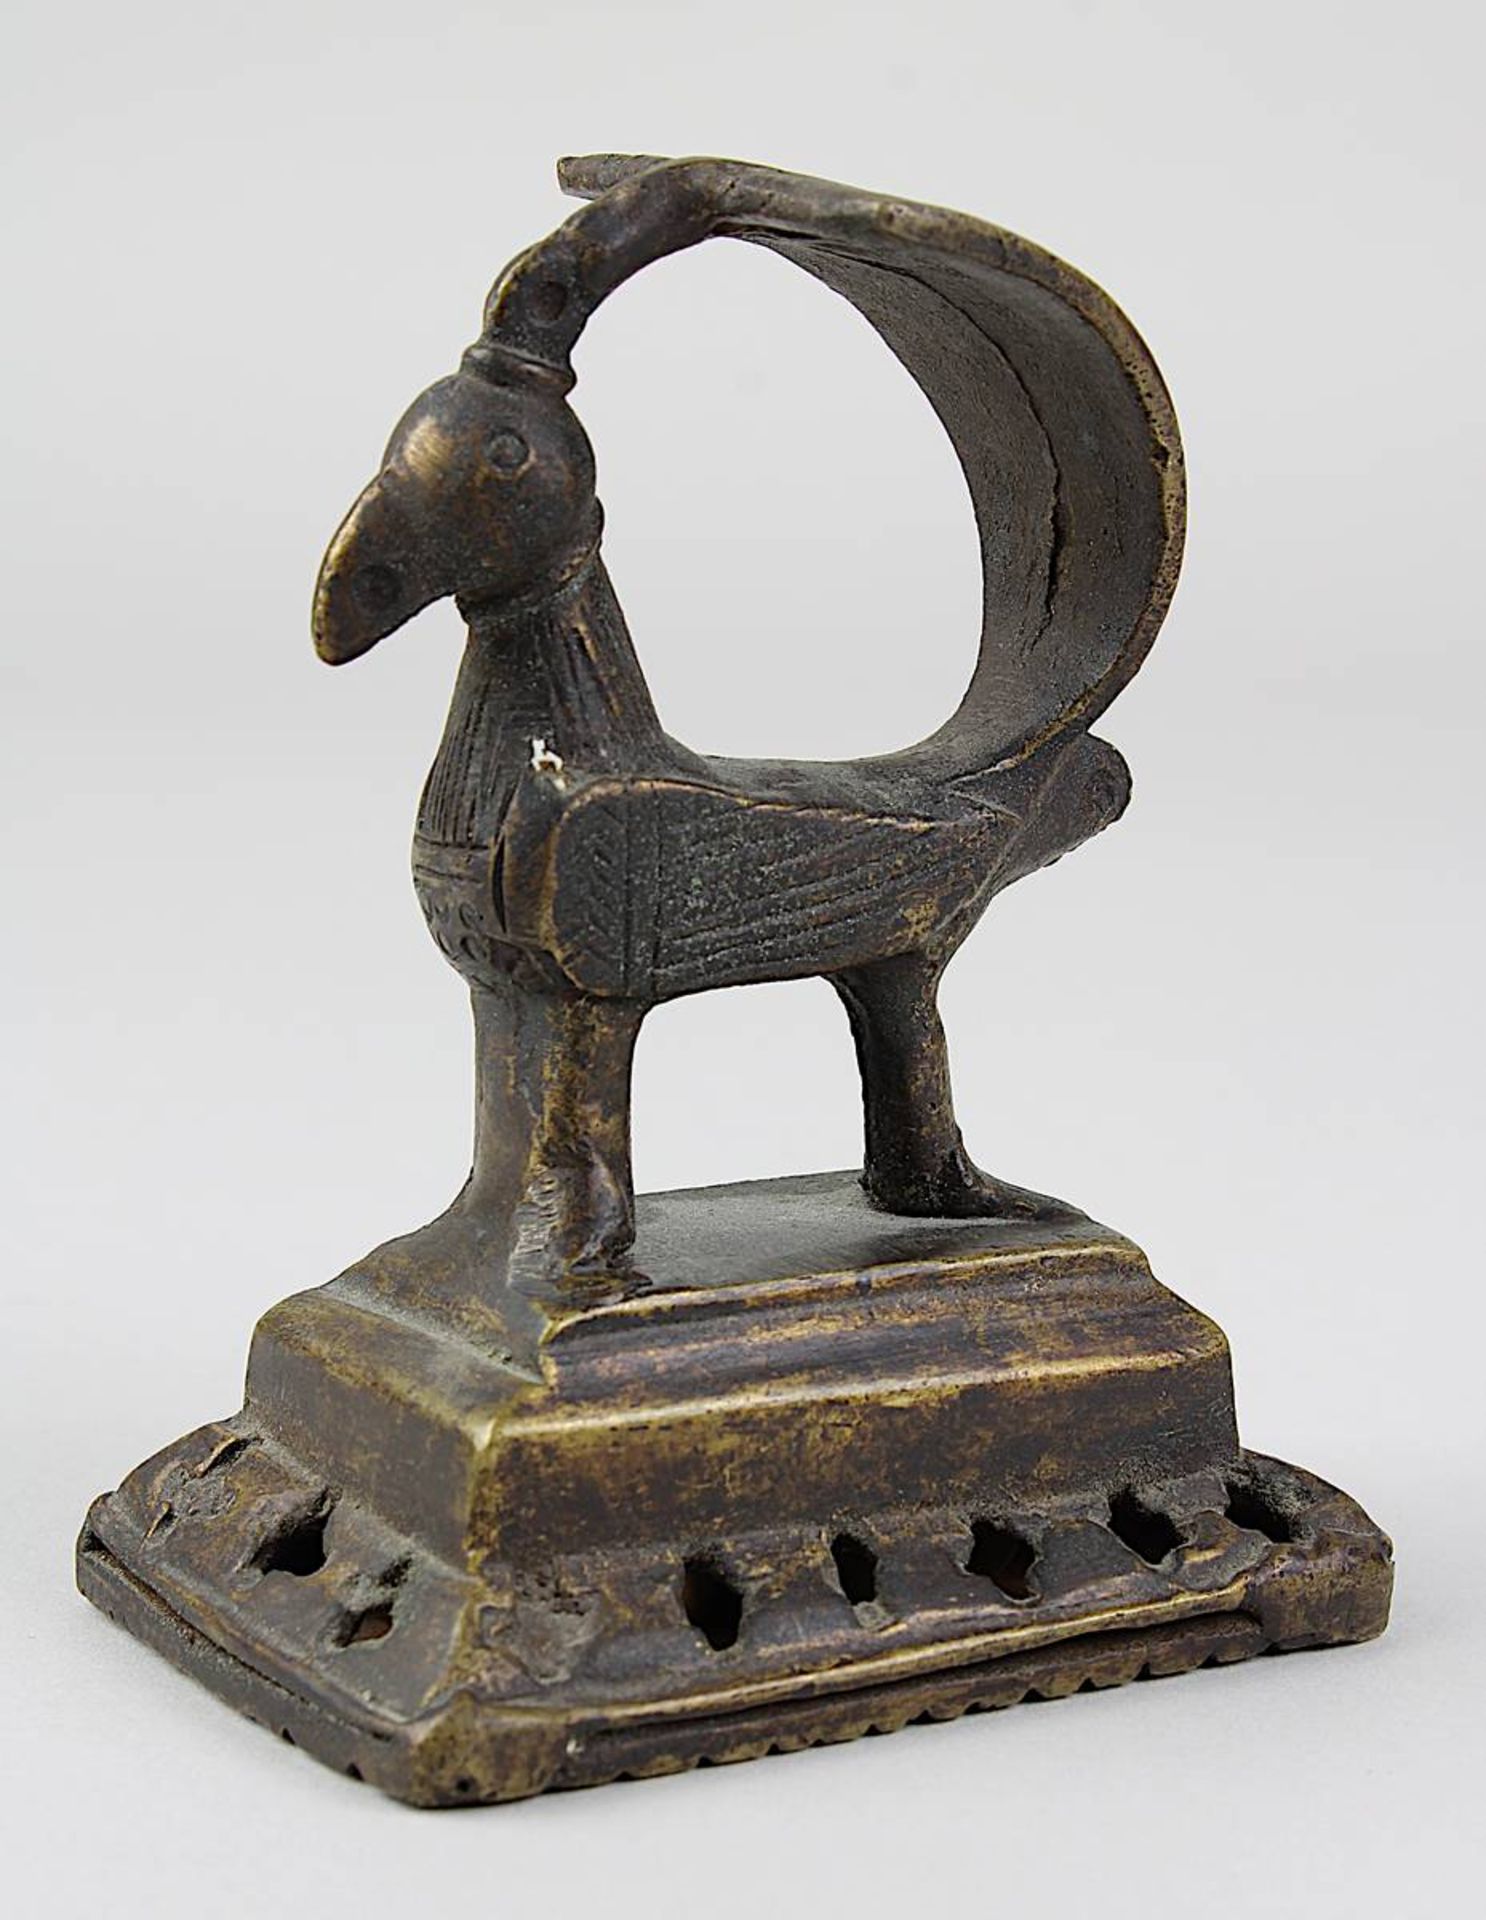 Rassel in Form eines stilisierten Vogels, Bronzeguss, Indien, H 9 cm, B 5 cm. 2756-025